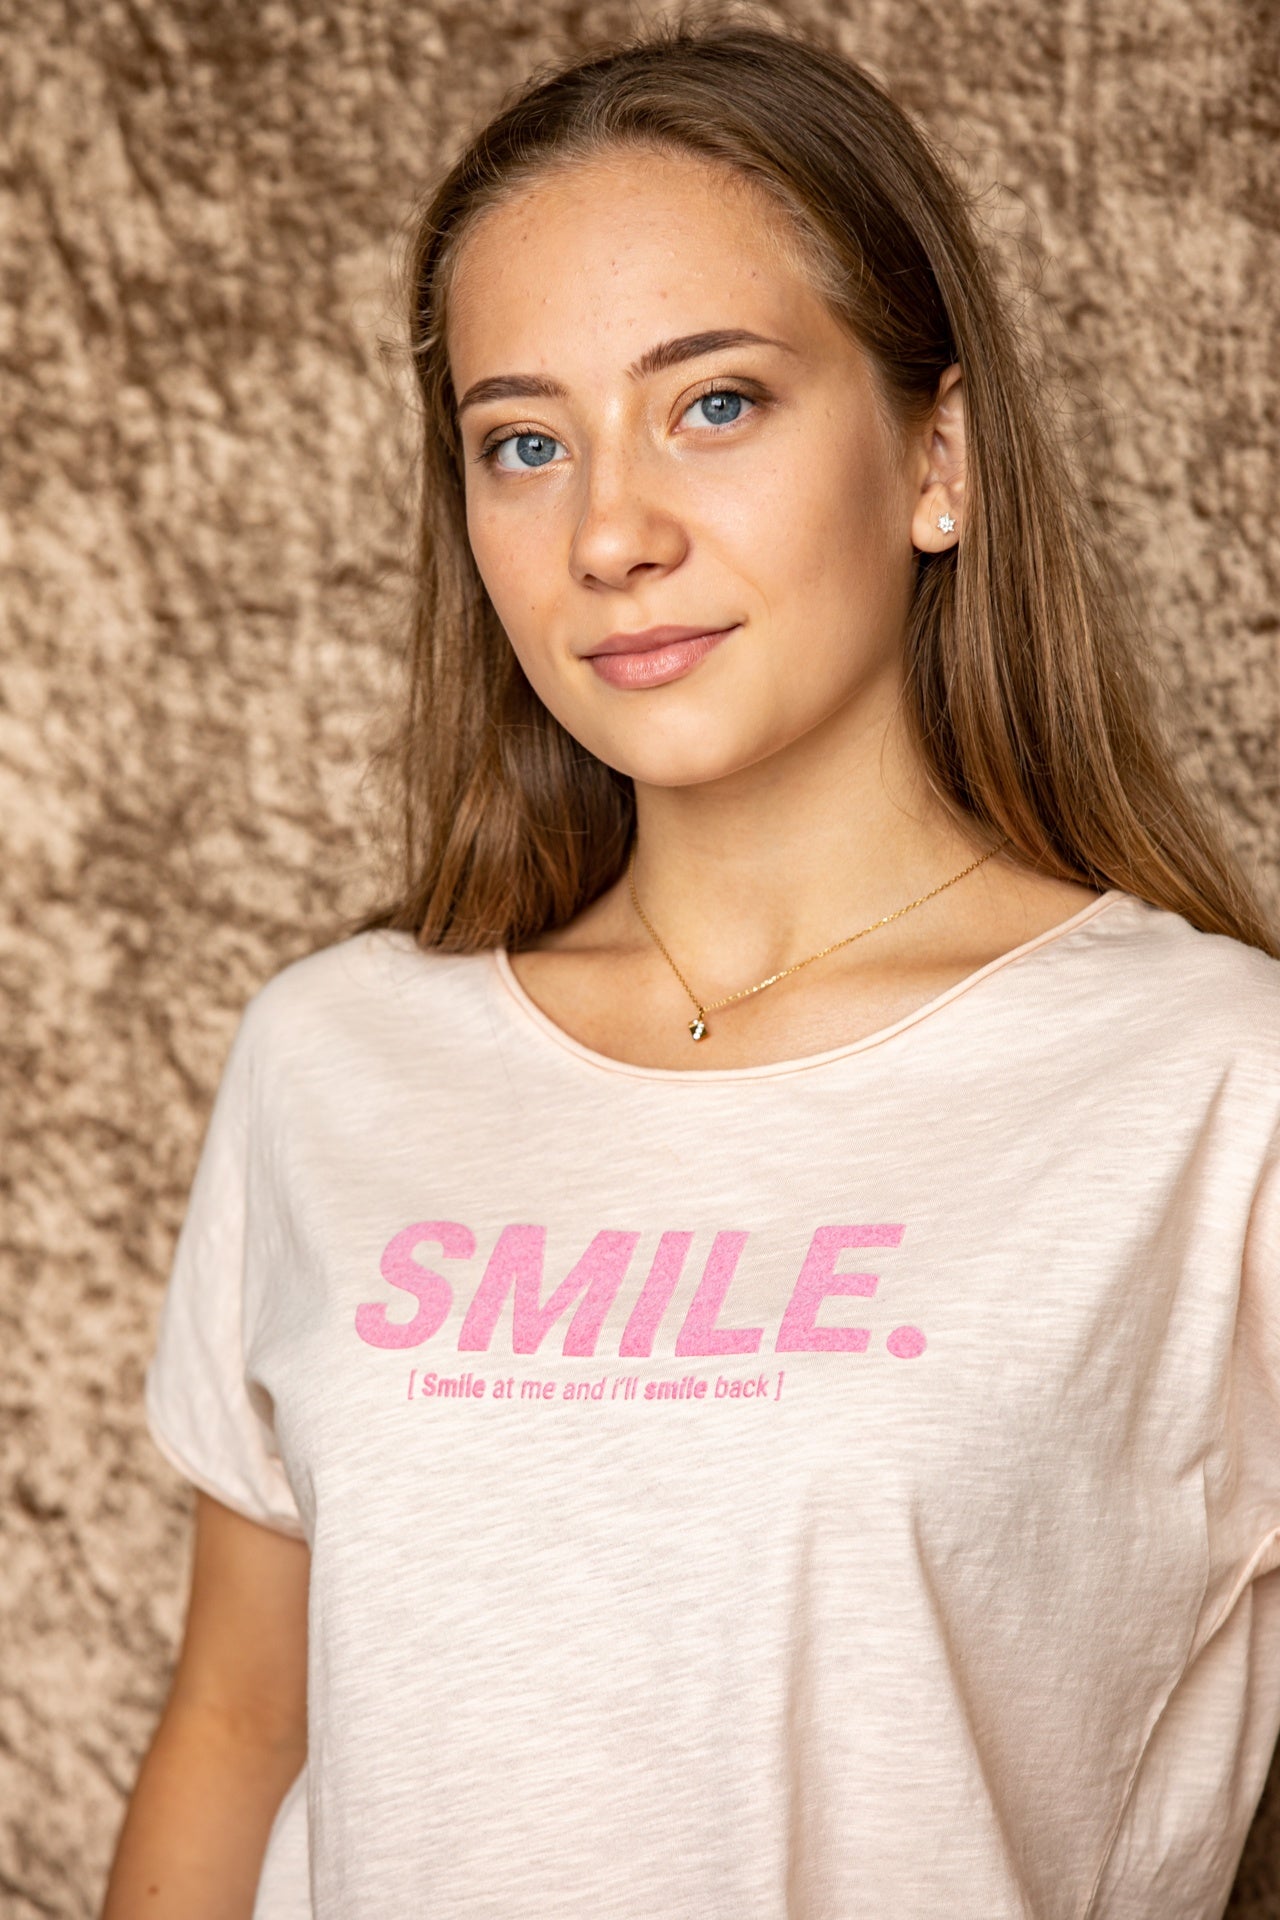 Smile Organic T-shirt, Women